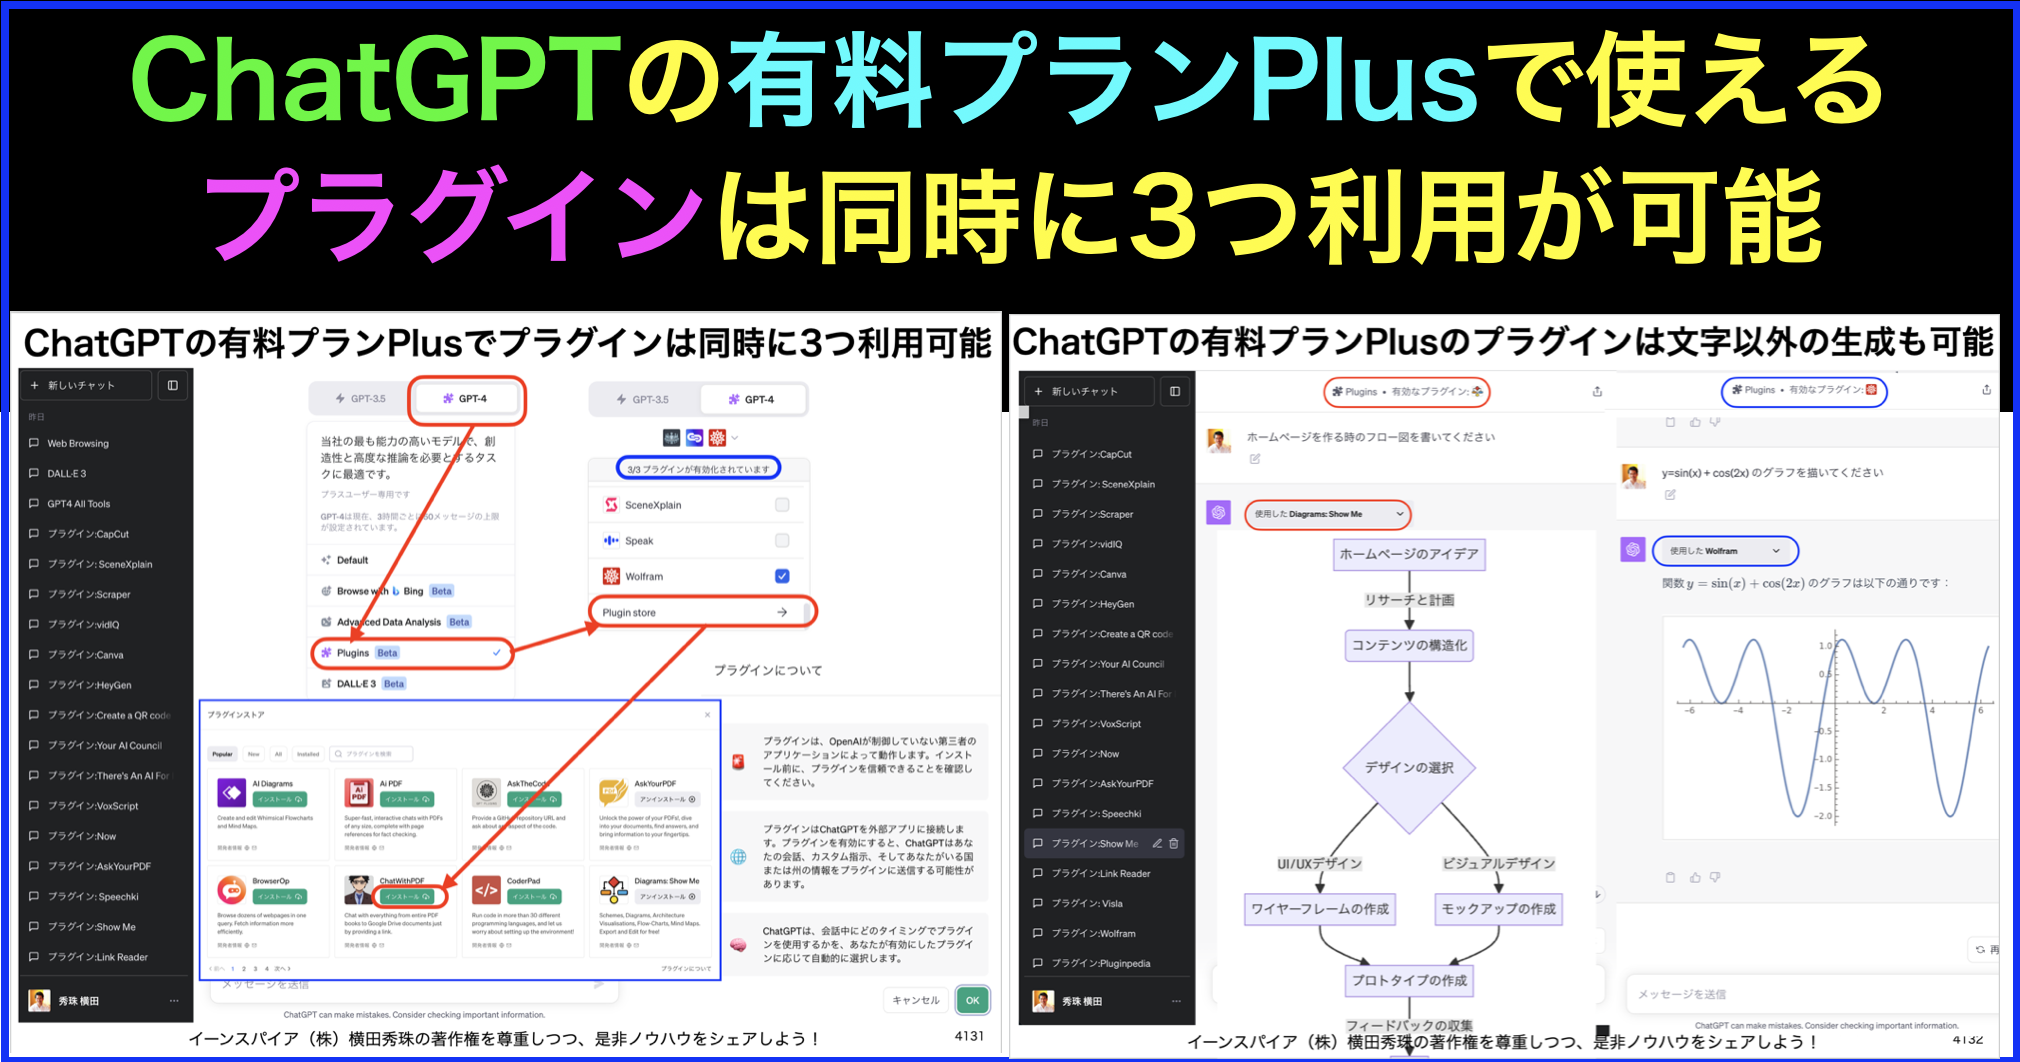 ChatGPTの有料プランPlusでプラグインは同時に3つ利用可能